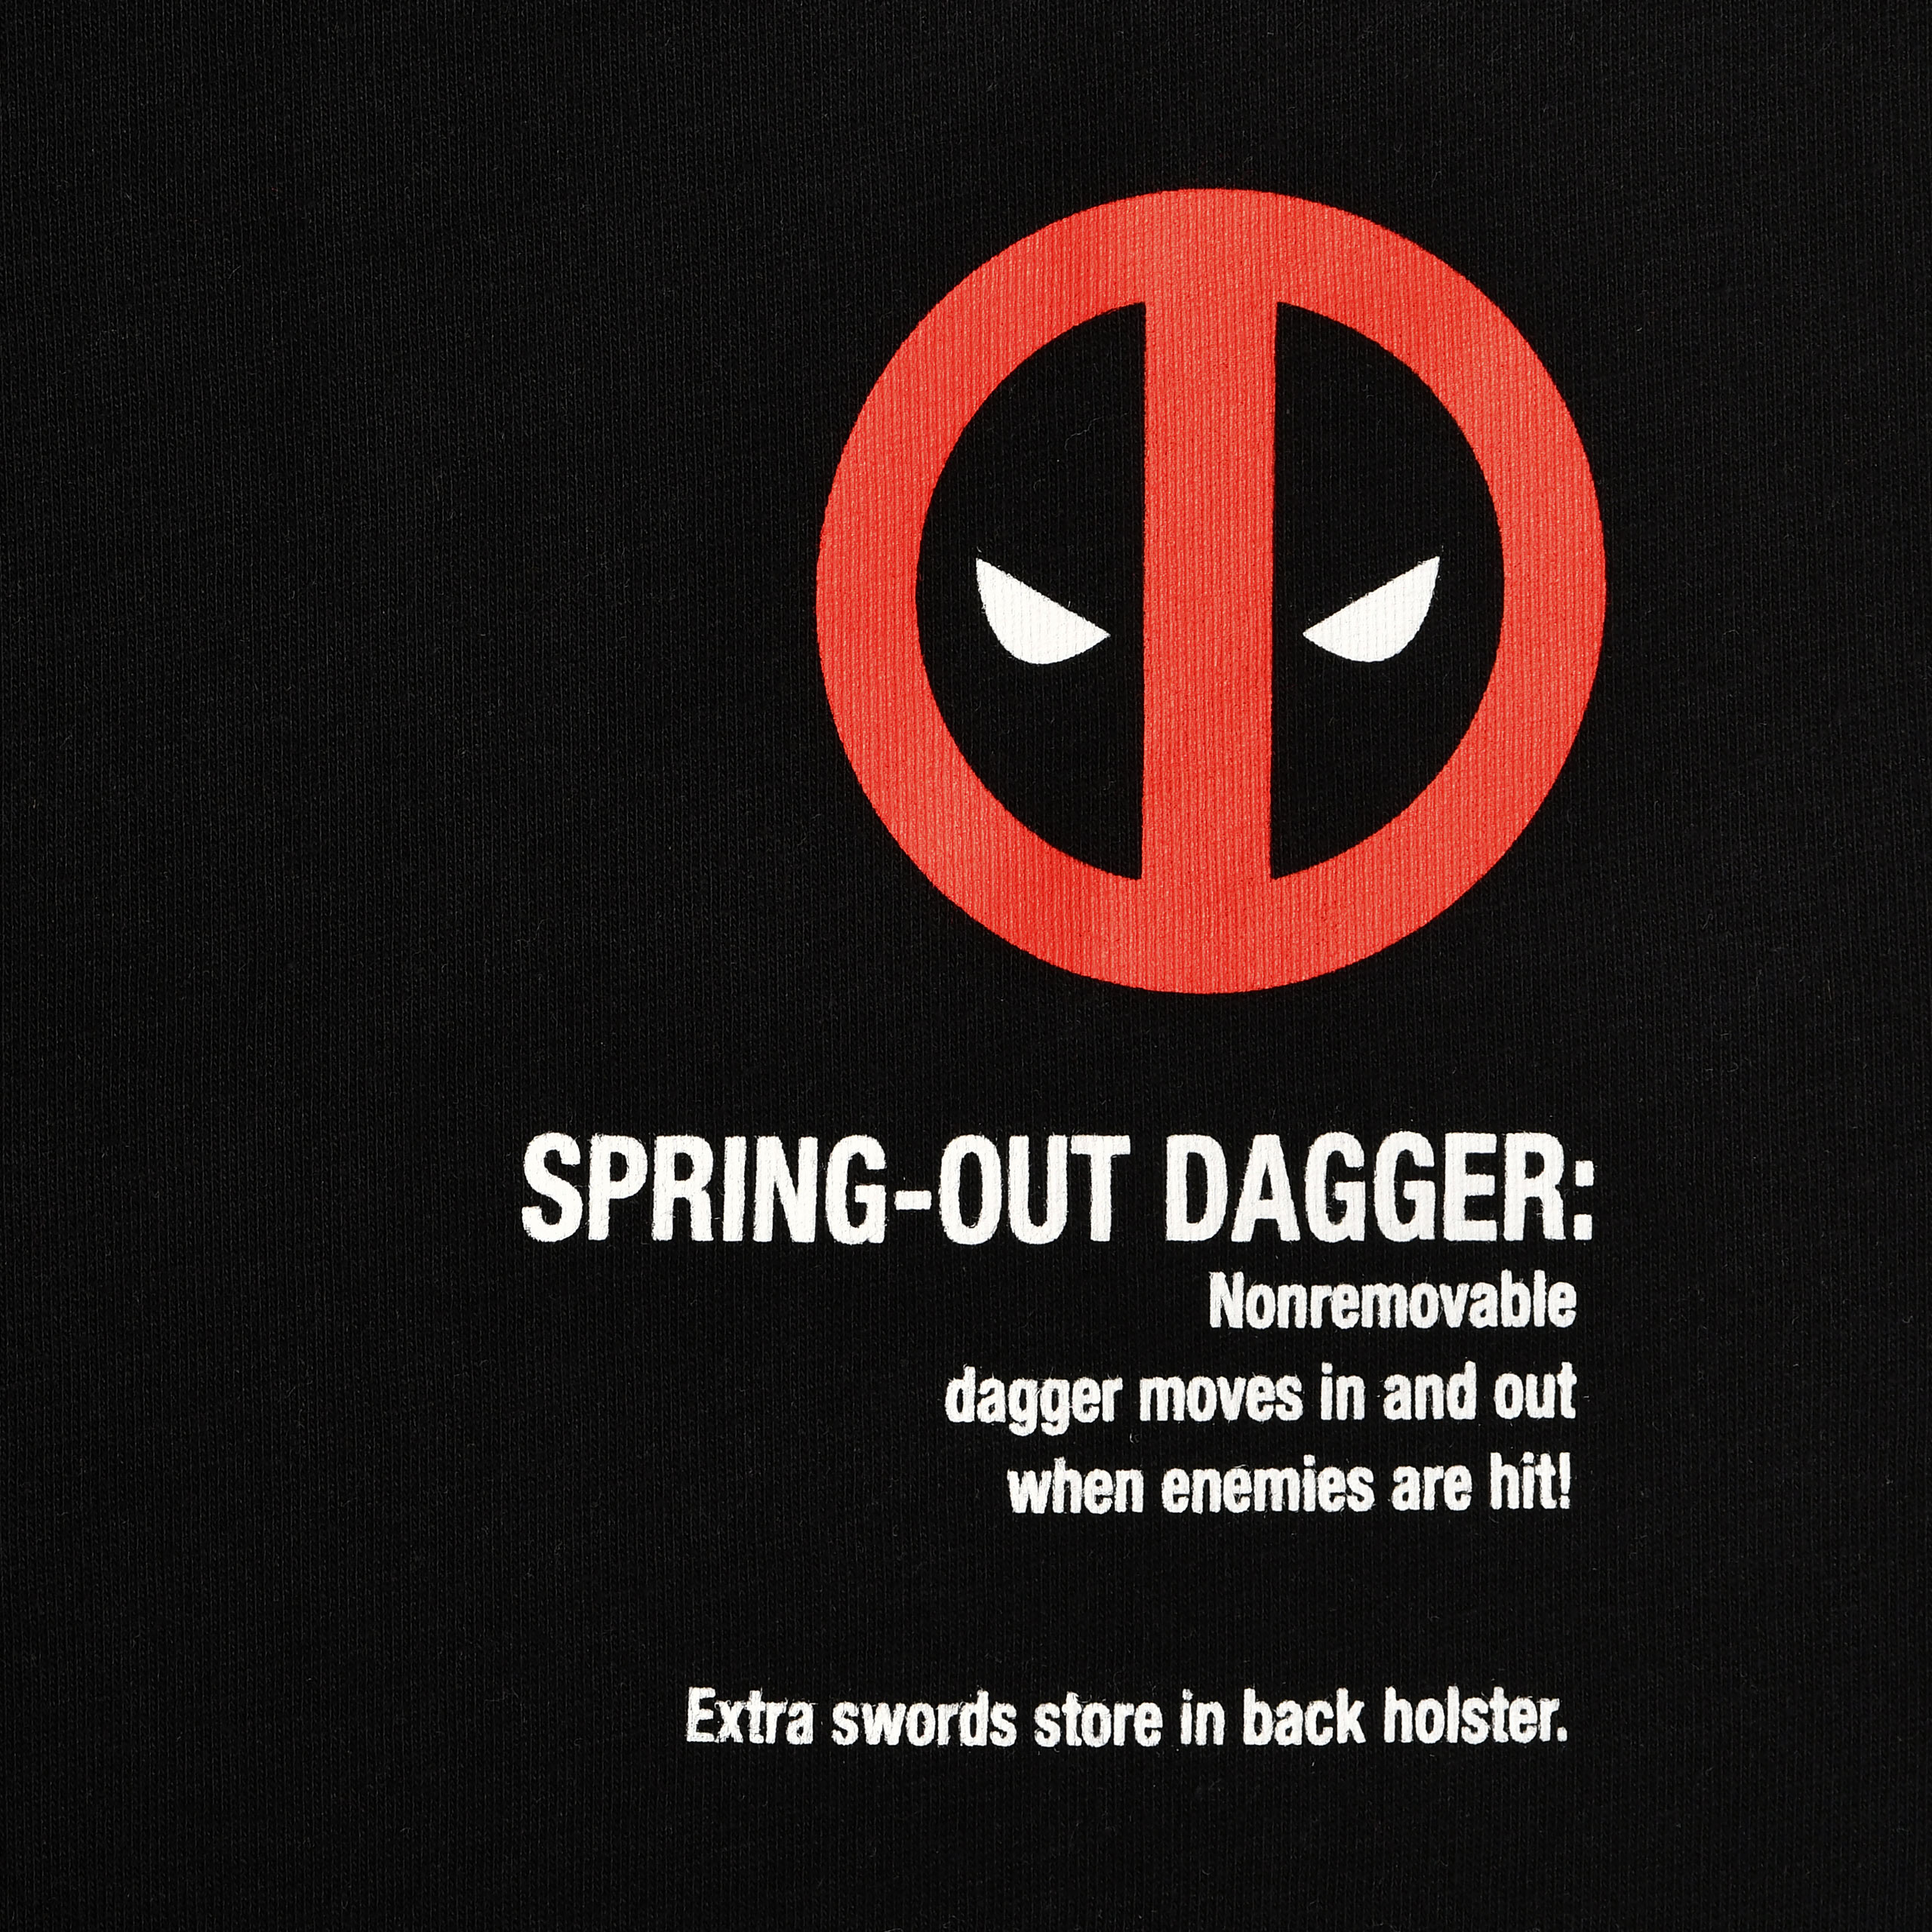 Deadpool - Wanted T-Shirt schwarz